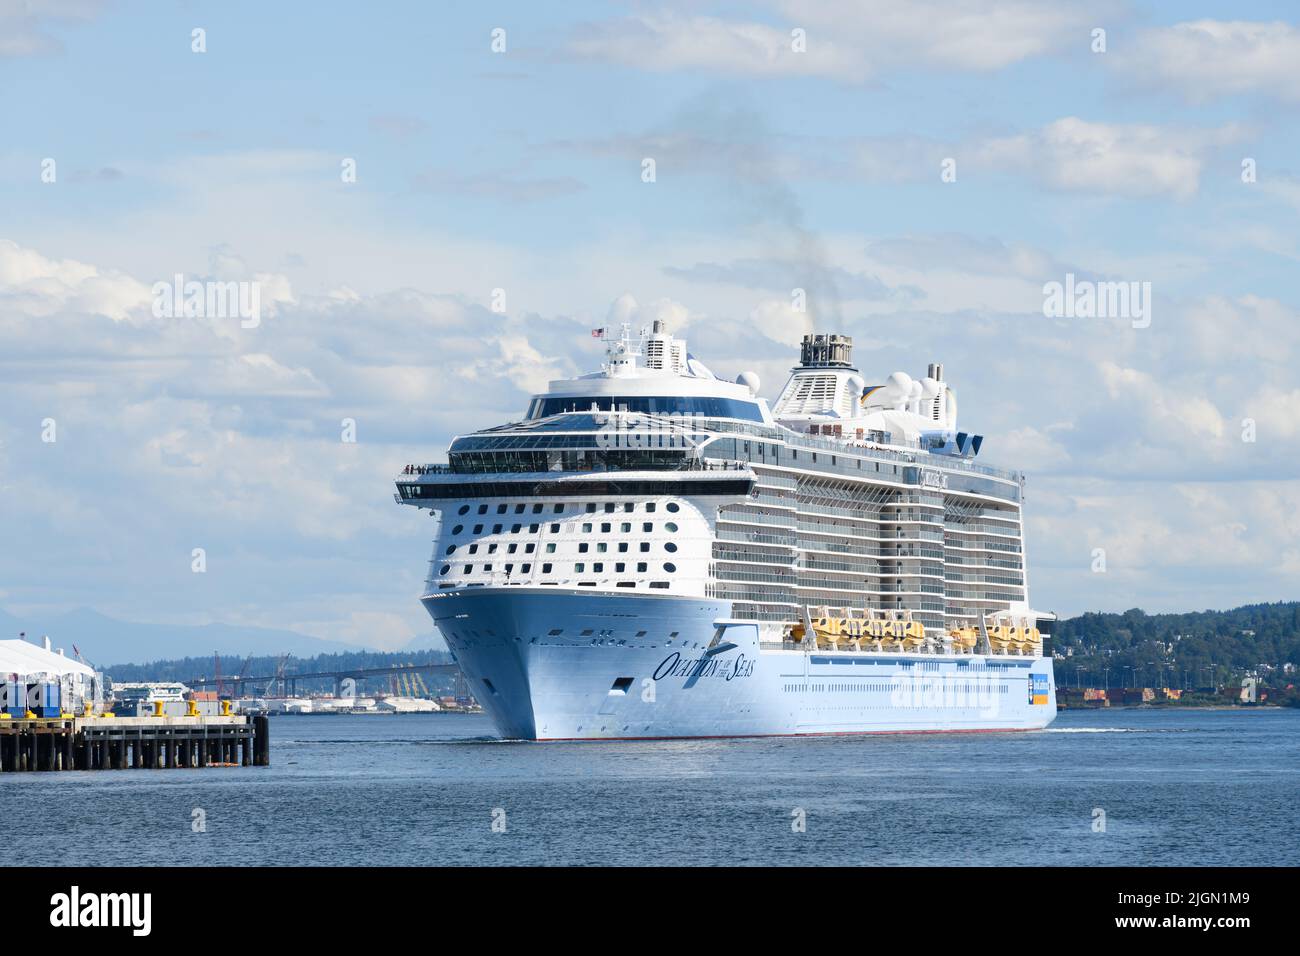 Seattle - 08. Juli 2022; Royal Caribbean Cruise Ship Ovation of the Seas, das bei schönem Sommerwetter von Seattle nach Alaska abfährt Stockfoto